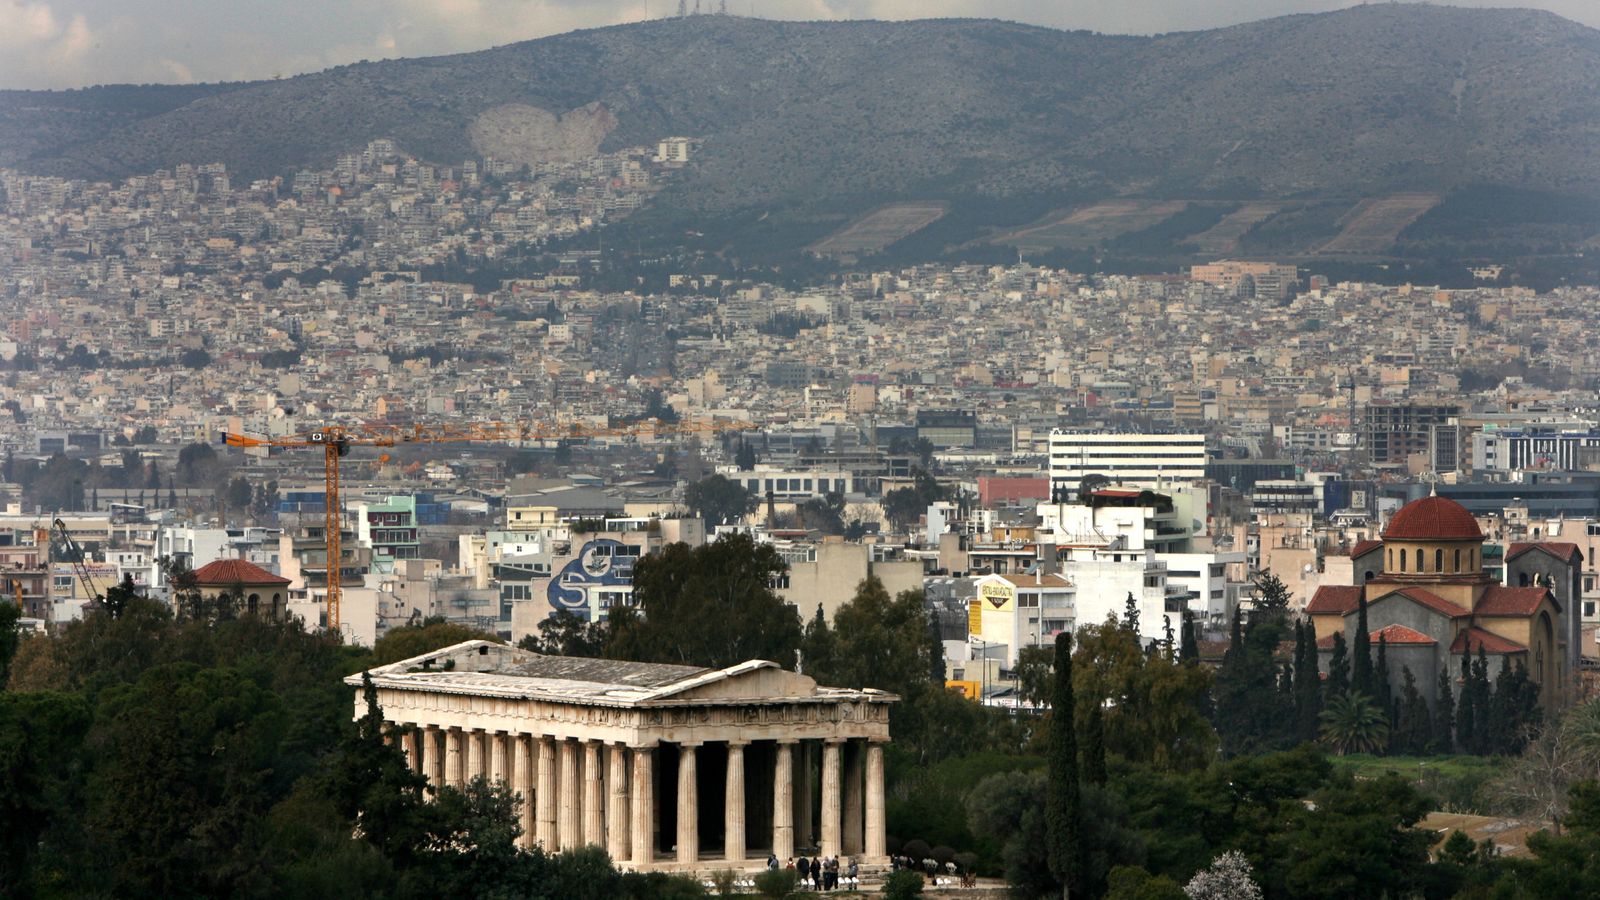 Athen zur besten Städtereise mit kleinem Budget gewählt |  Reisenachrichten